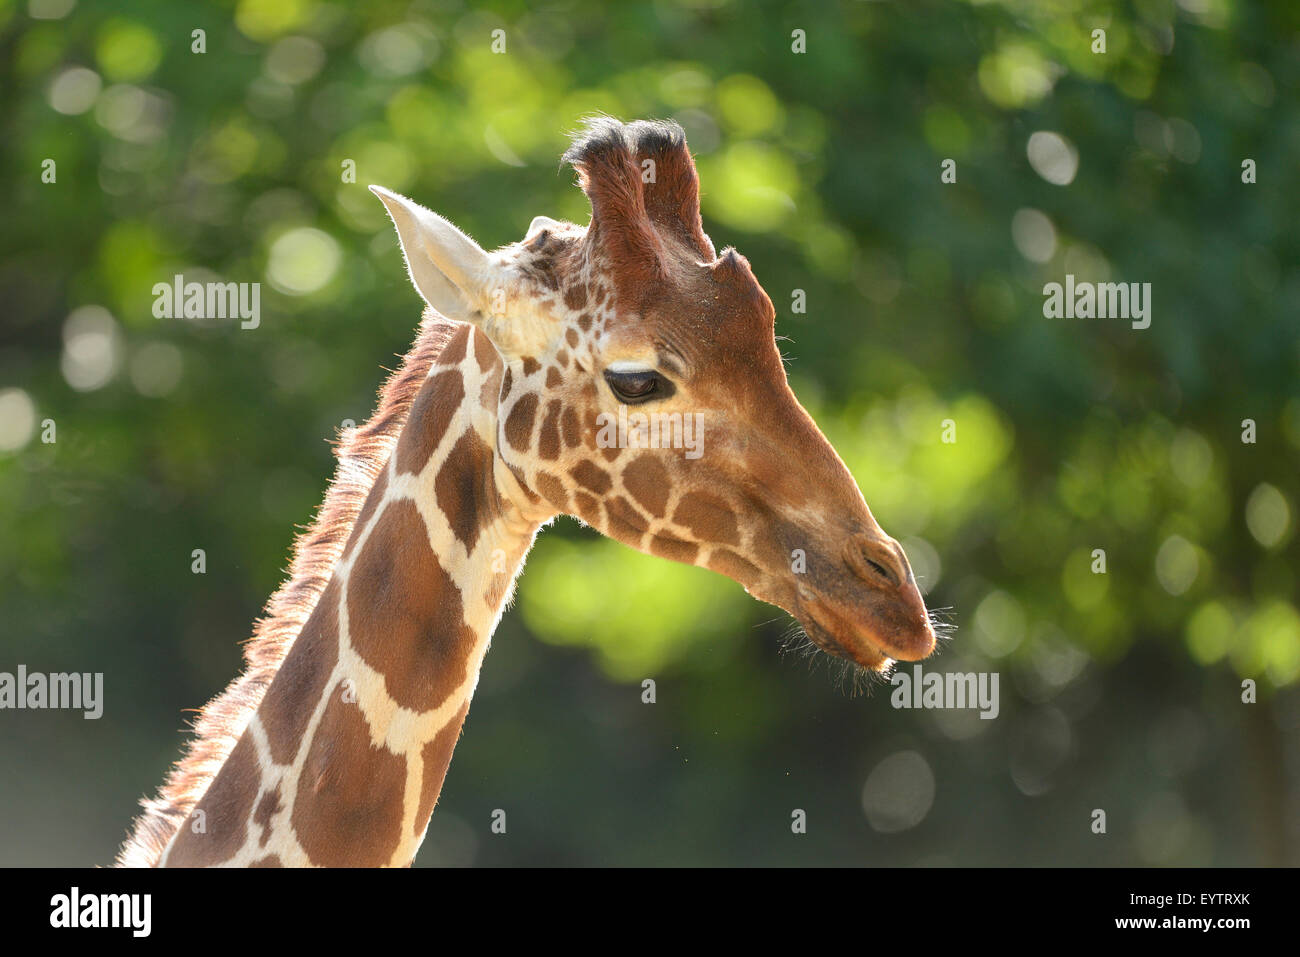 reticulated giraffe (somali giraffe), Giraffa camelopardalis reticulata, portrait, side view Stock Photo